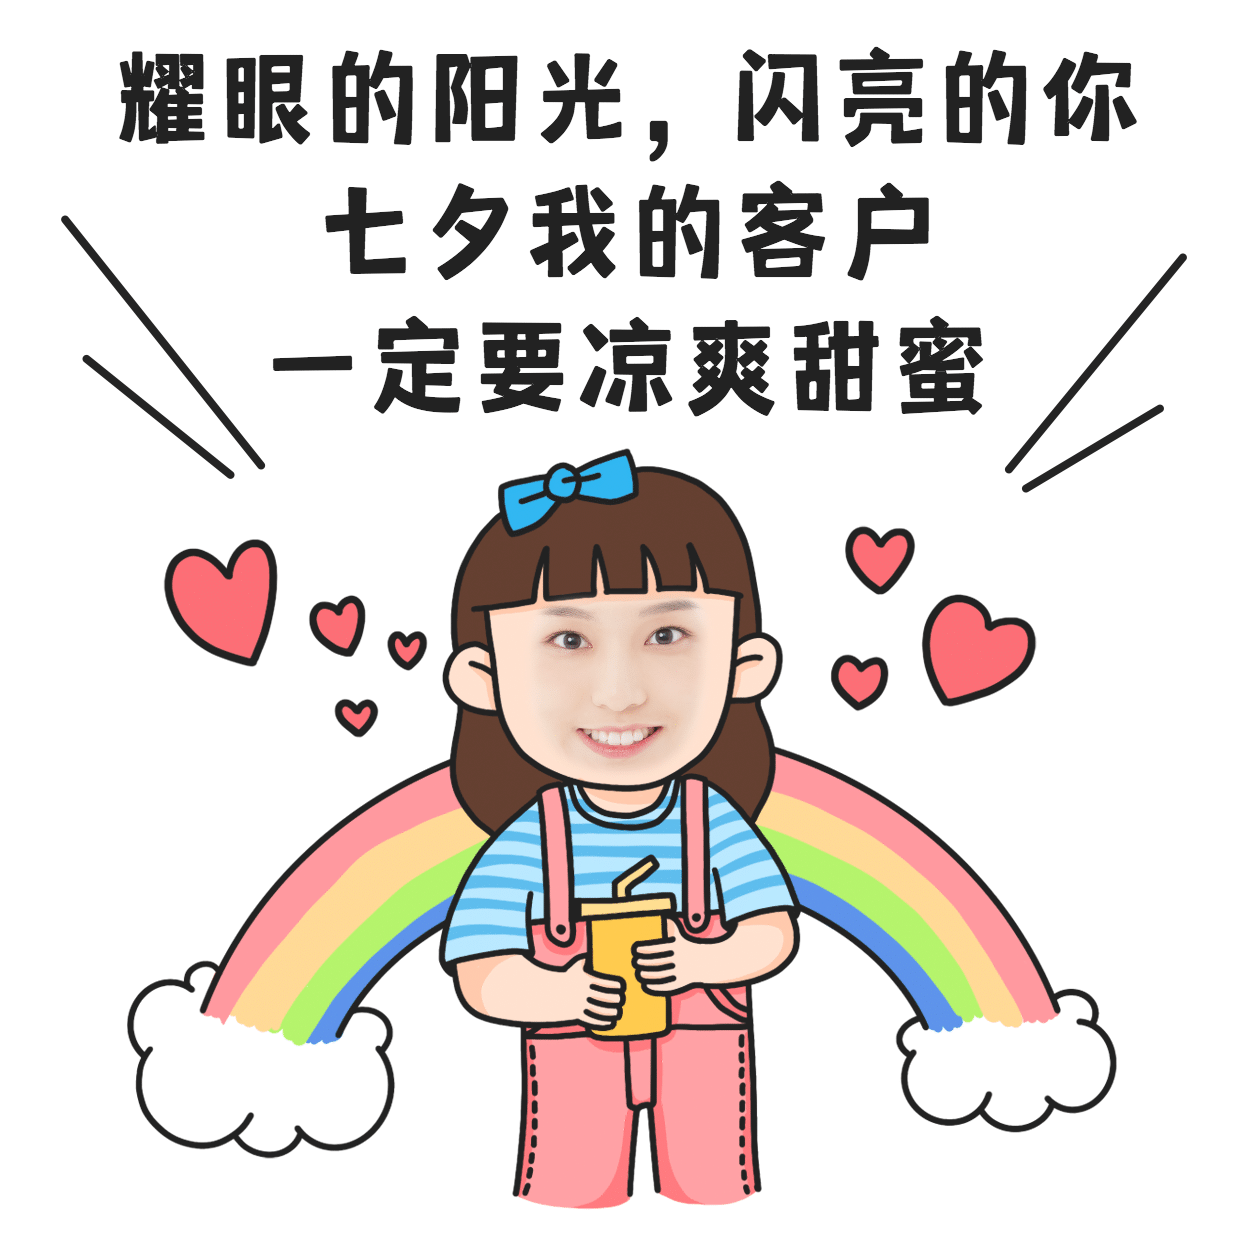 七夕创意玩法祝福手绘彩虹爱心表情包预览效果